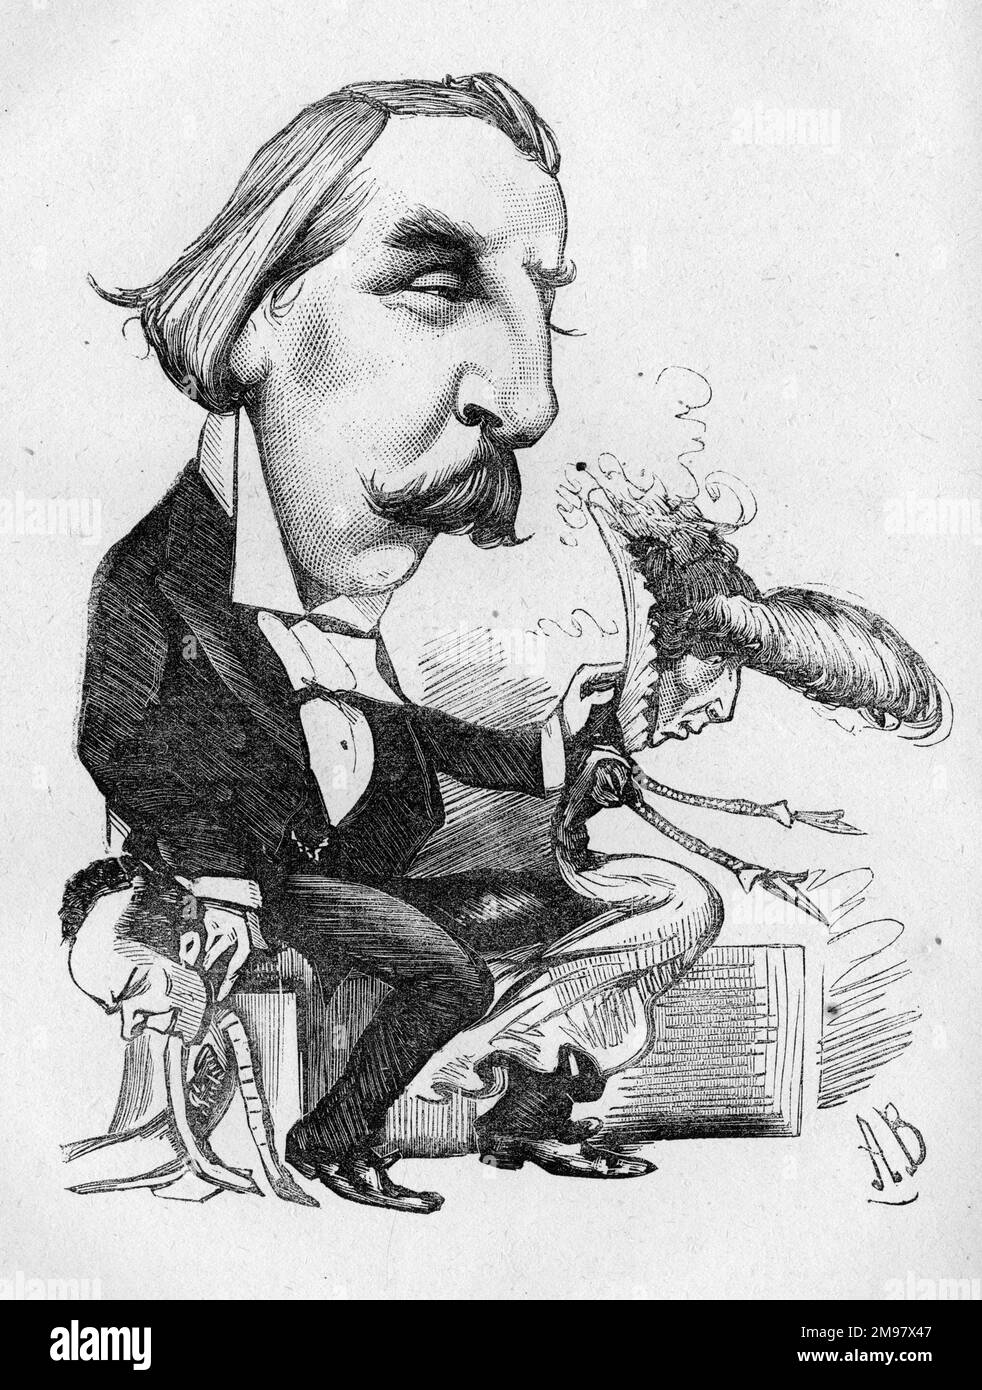 Caricature de John Hollingshead (1827-1904), à cette époque gérant du Gaiety Theatre, vu ici ressusciter un acteur (probablement Edward Terry) et une actrice (Sarah Bernhardt) sous forme de marionnettes. Le showman Gaiety -- une fois de plus. Banque D'Images